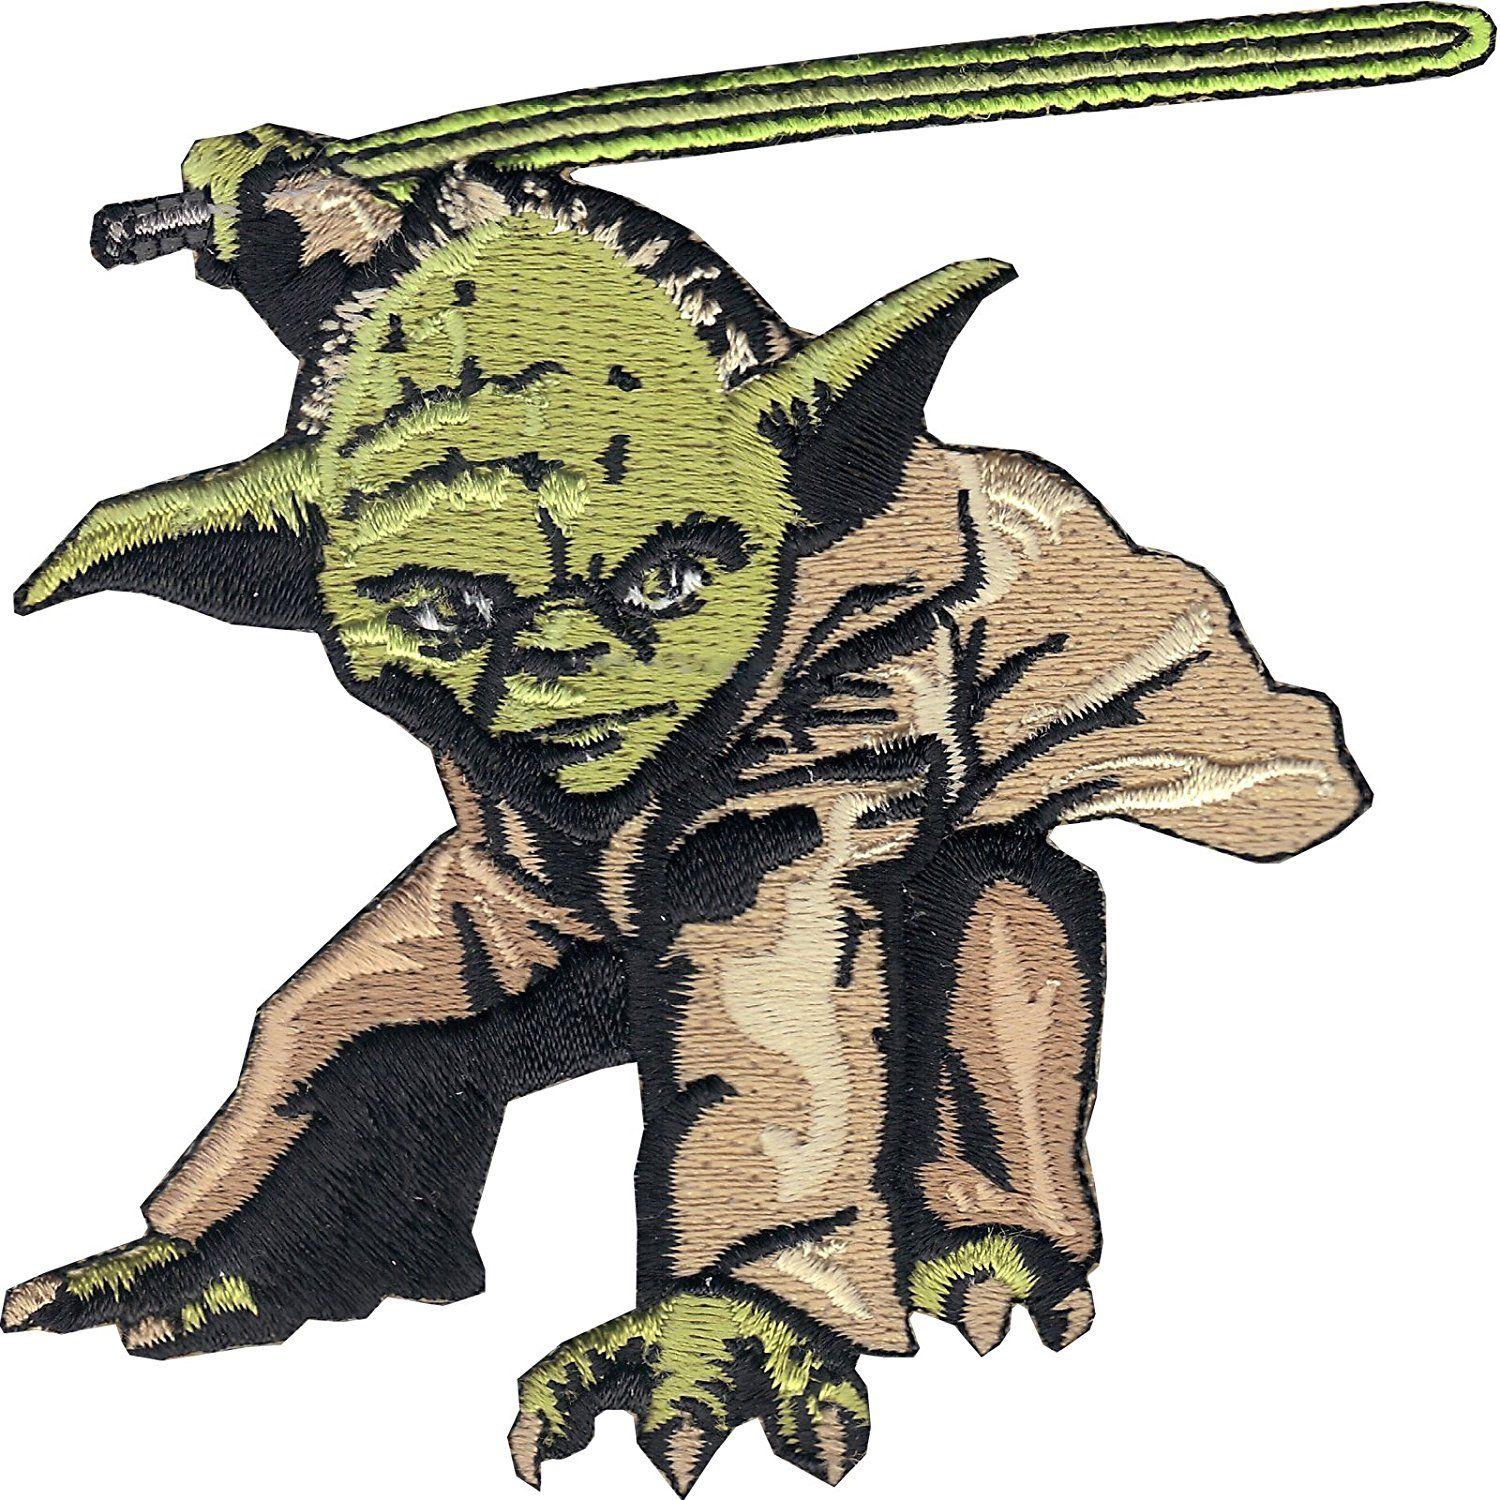 Yoda Logo - Star Wars Yoda Jedi Master Badge Logo Patch Fighter Crest IronOn